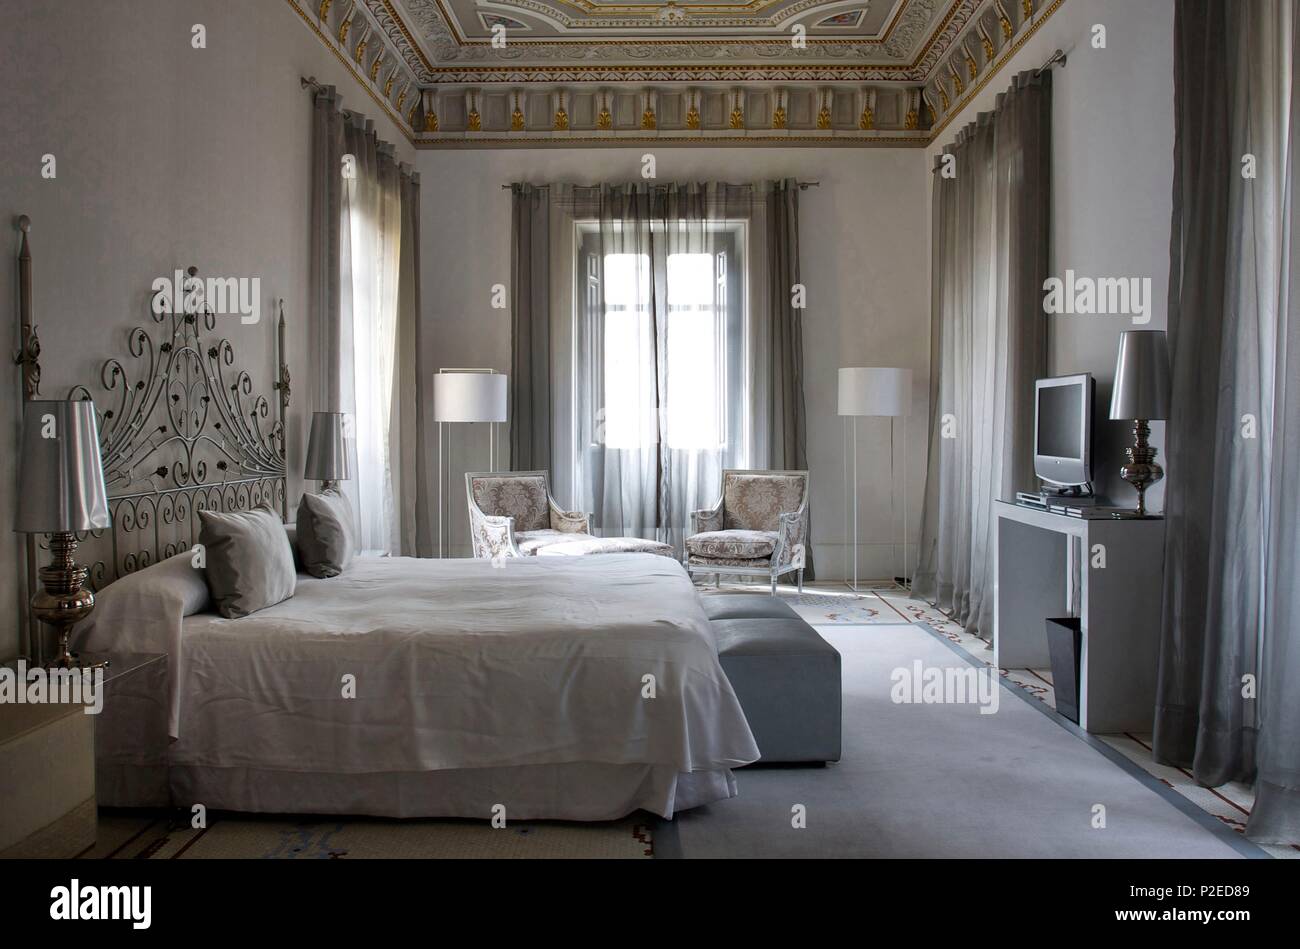 Spain, Andalusia, Granada, Suite in the hotel Palacio de los Patos of the Hospes group Stock Photo